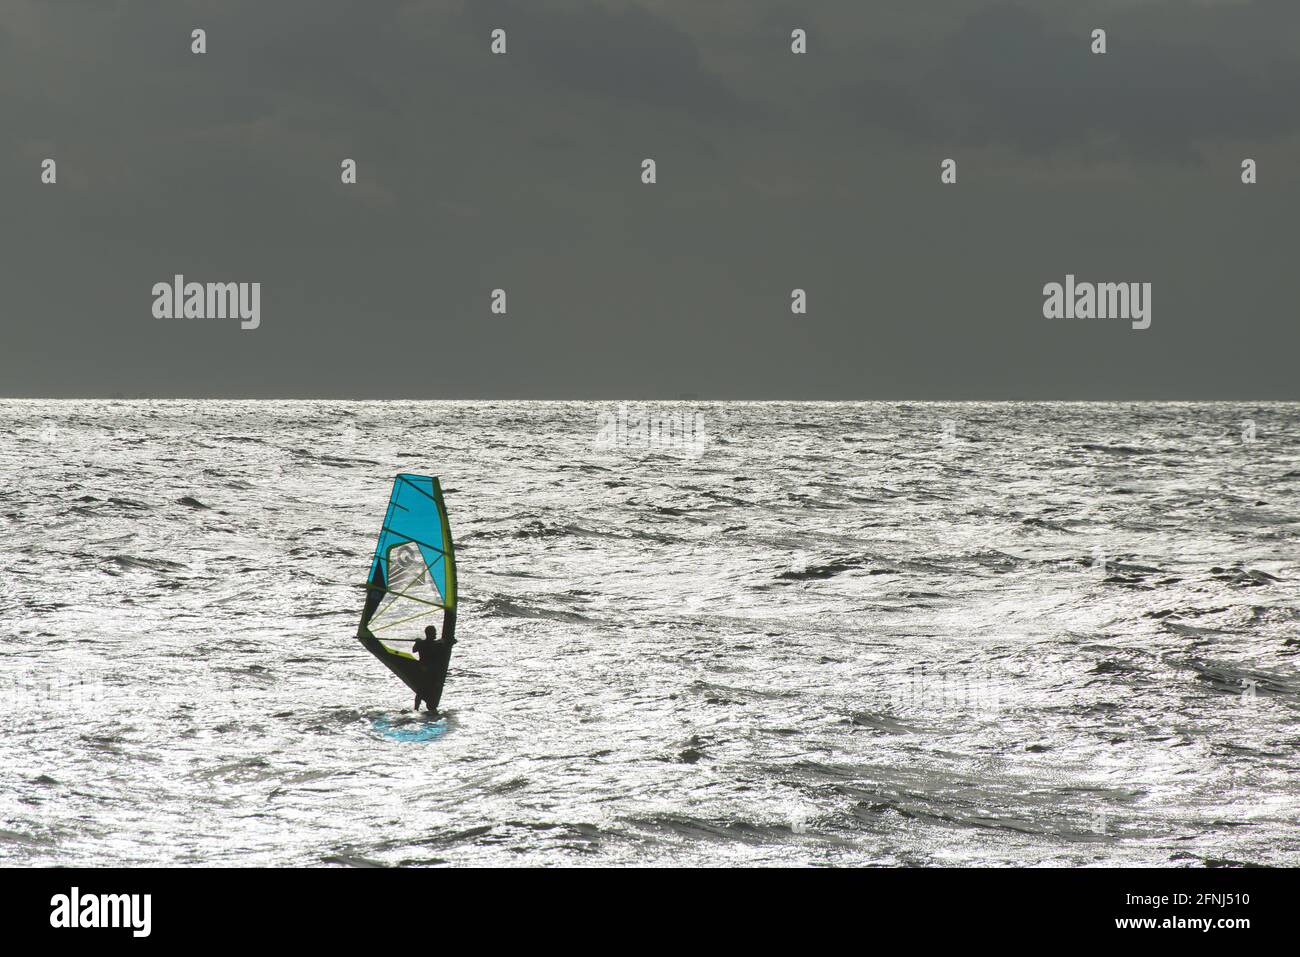 Image mémorable d'une planche à voile unique avec voile bleue une mer argentée avec horizon argenté séparant le ciel sombre de fond Banque D'Images